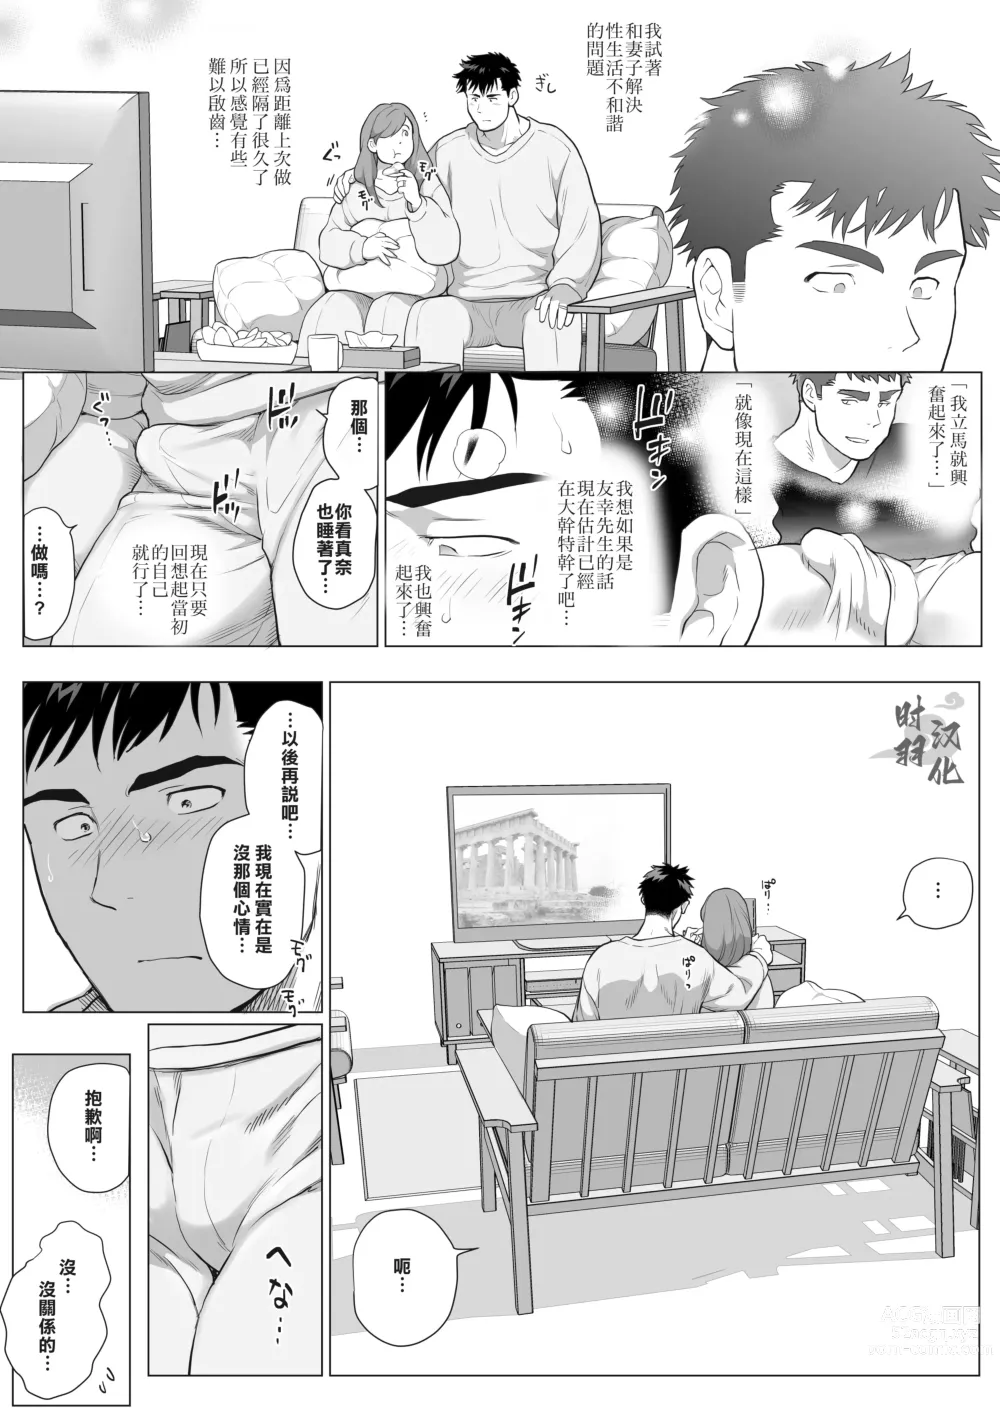 Page 5 of manga 直人爸爸与友幸爸爸 第三话